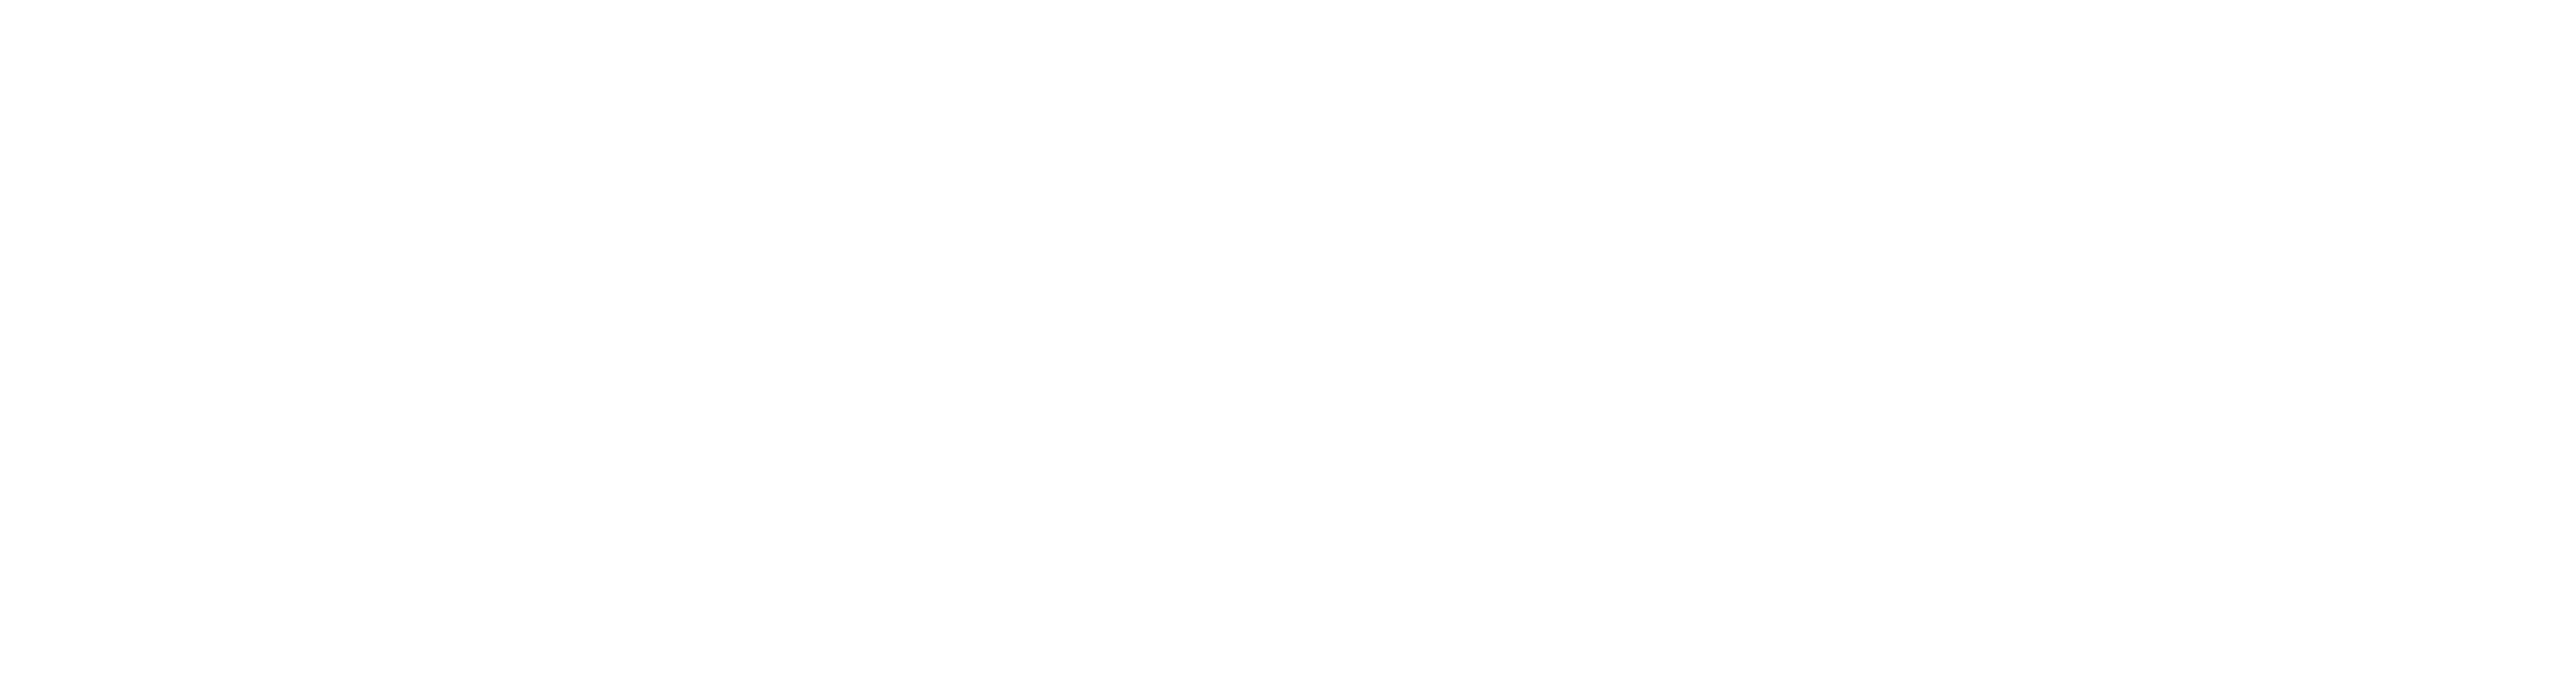 Imperia-M